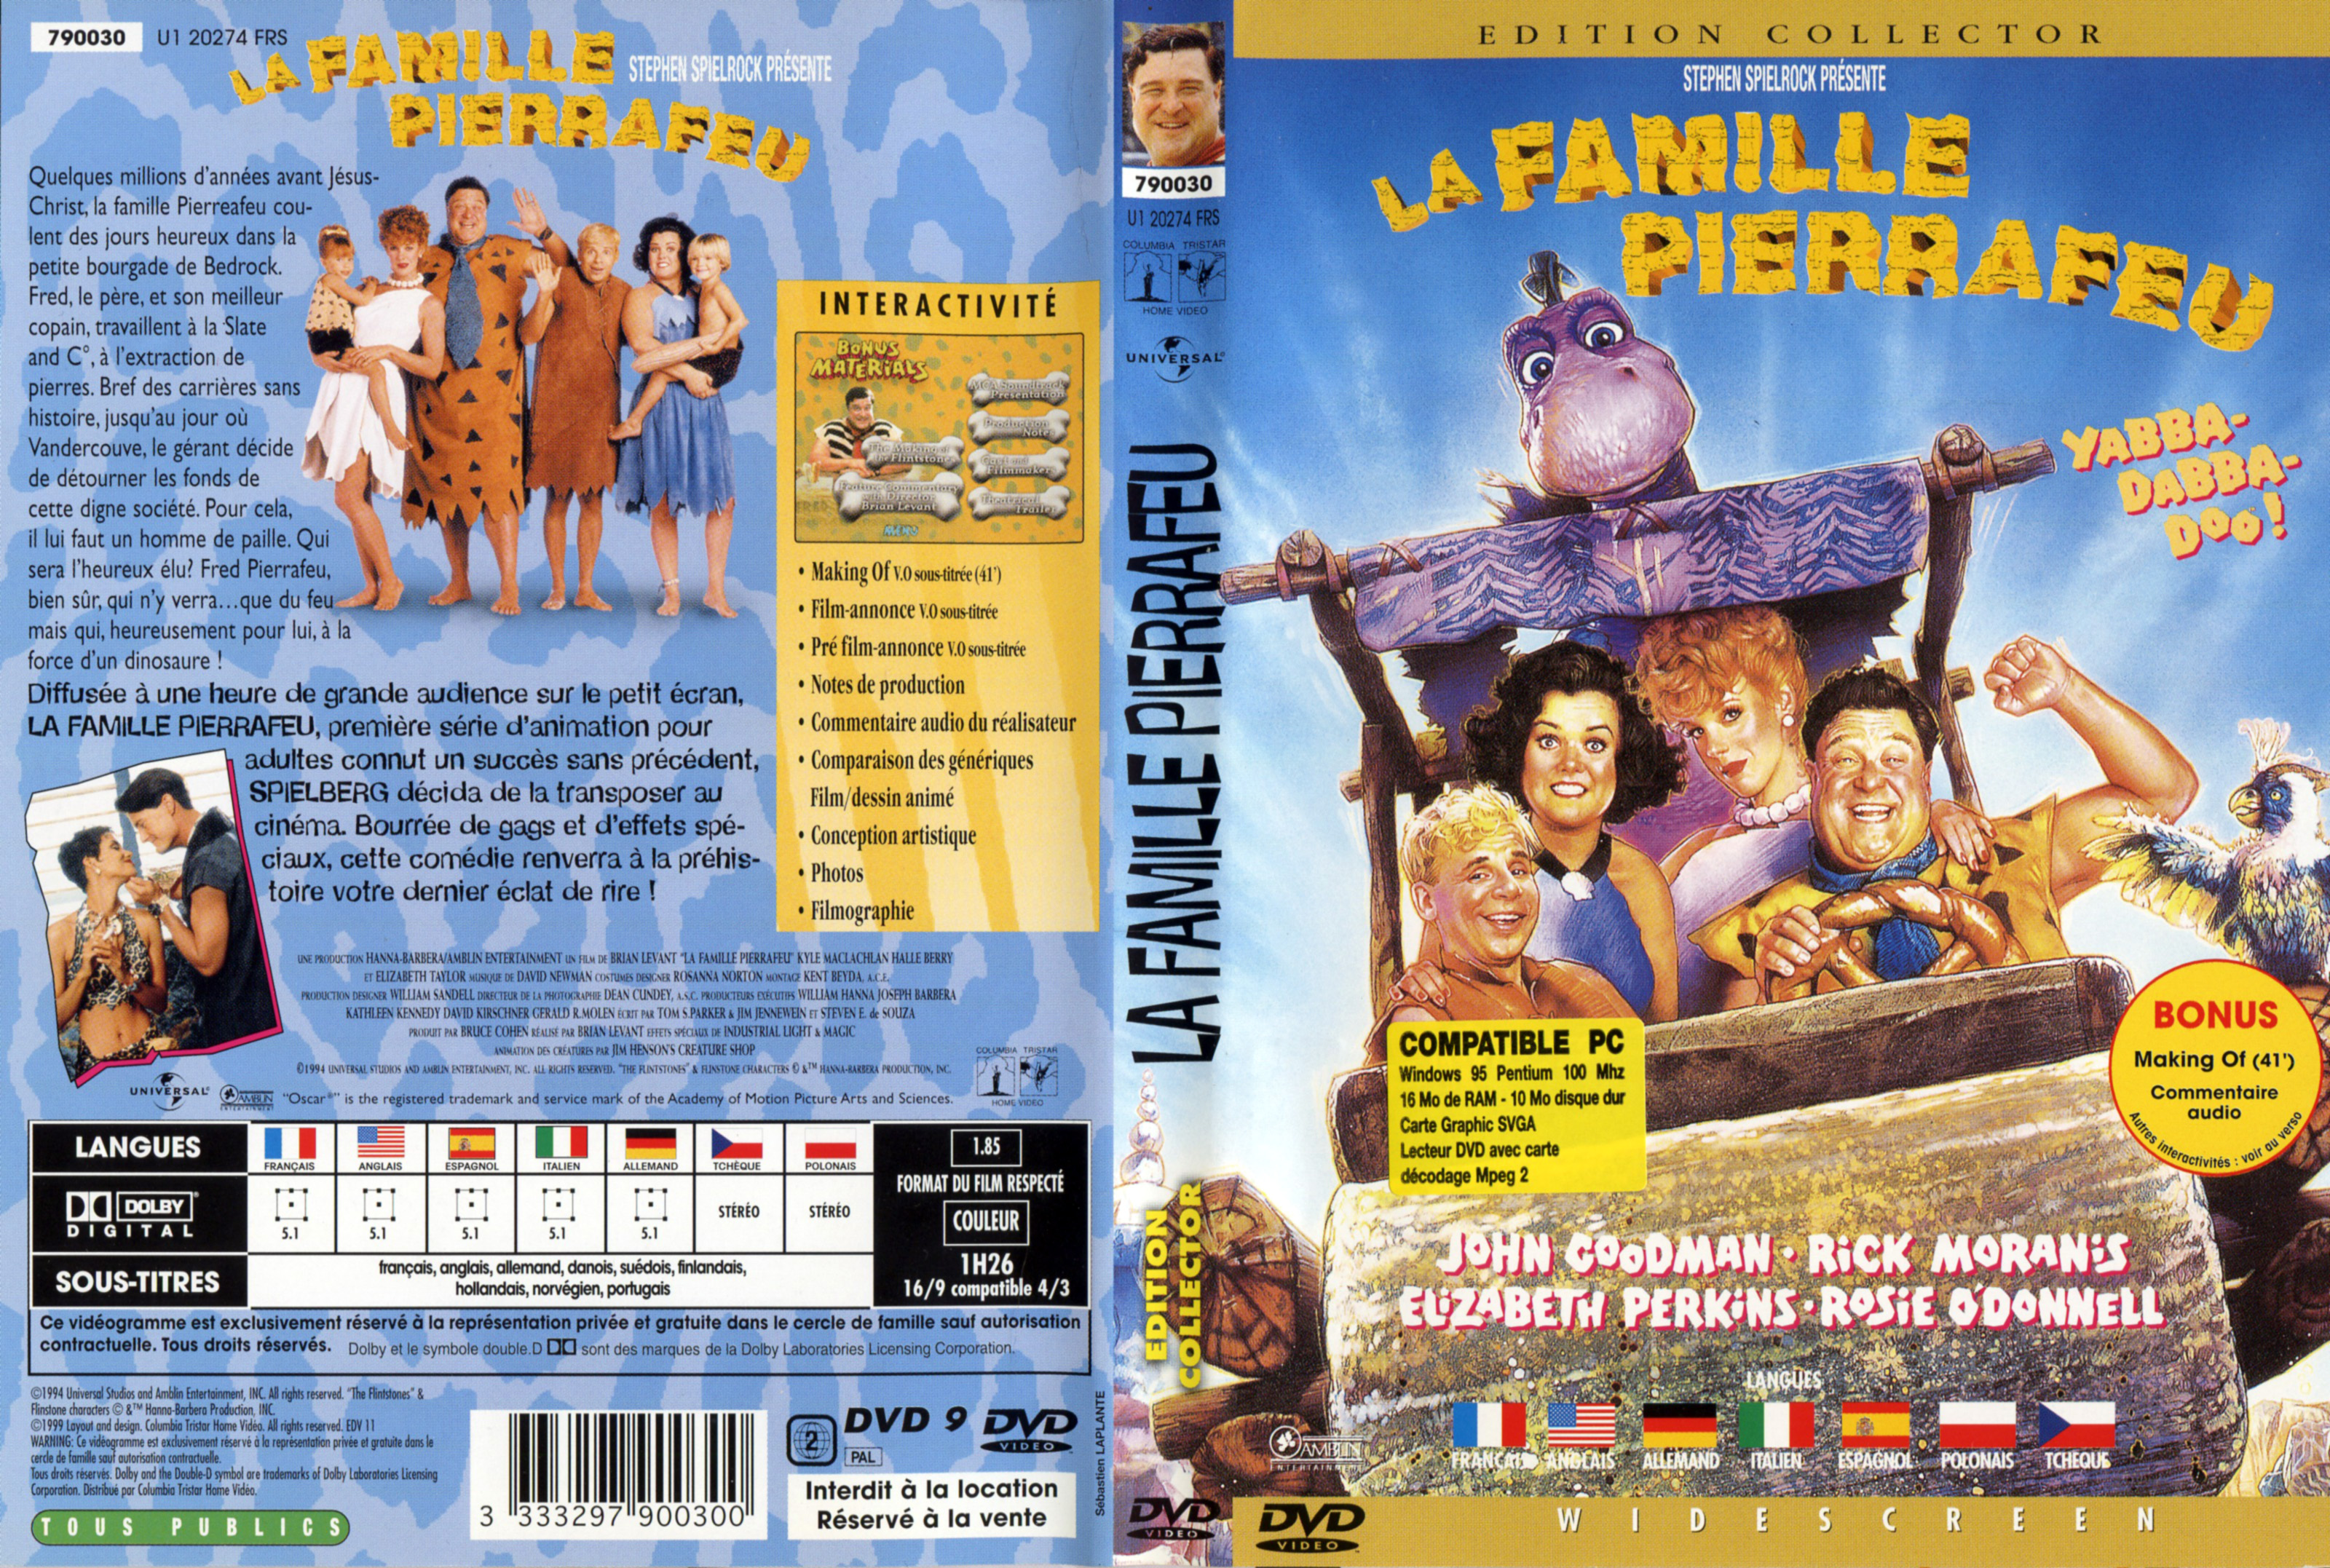 Jaquette DVD La famille Pierrafeu v2